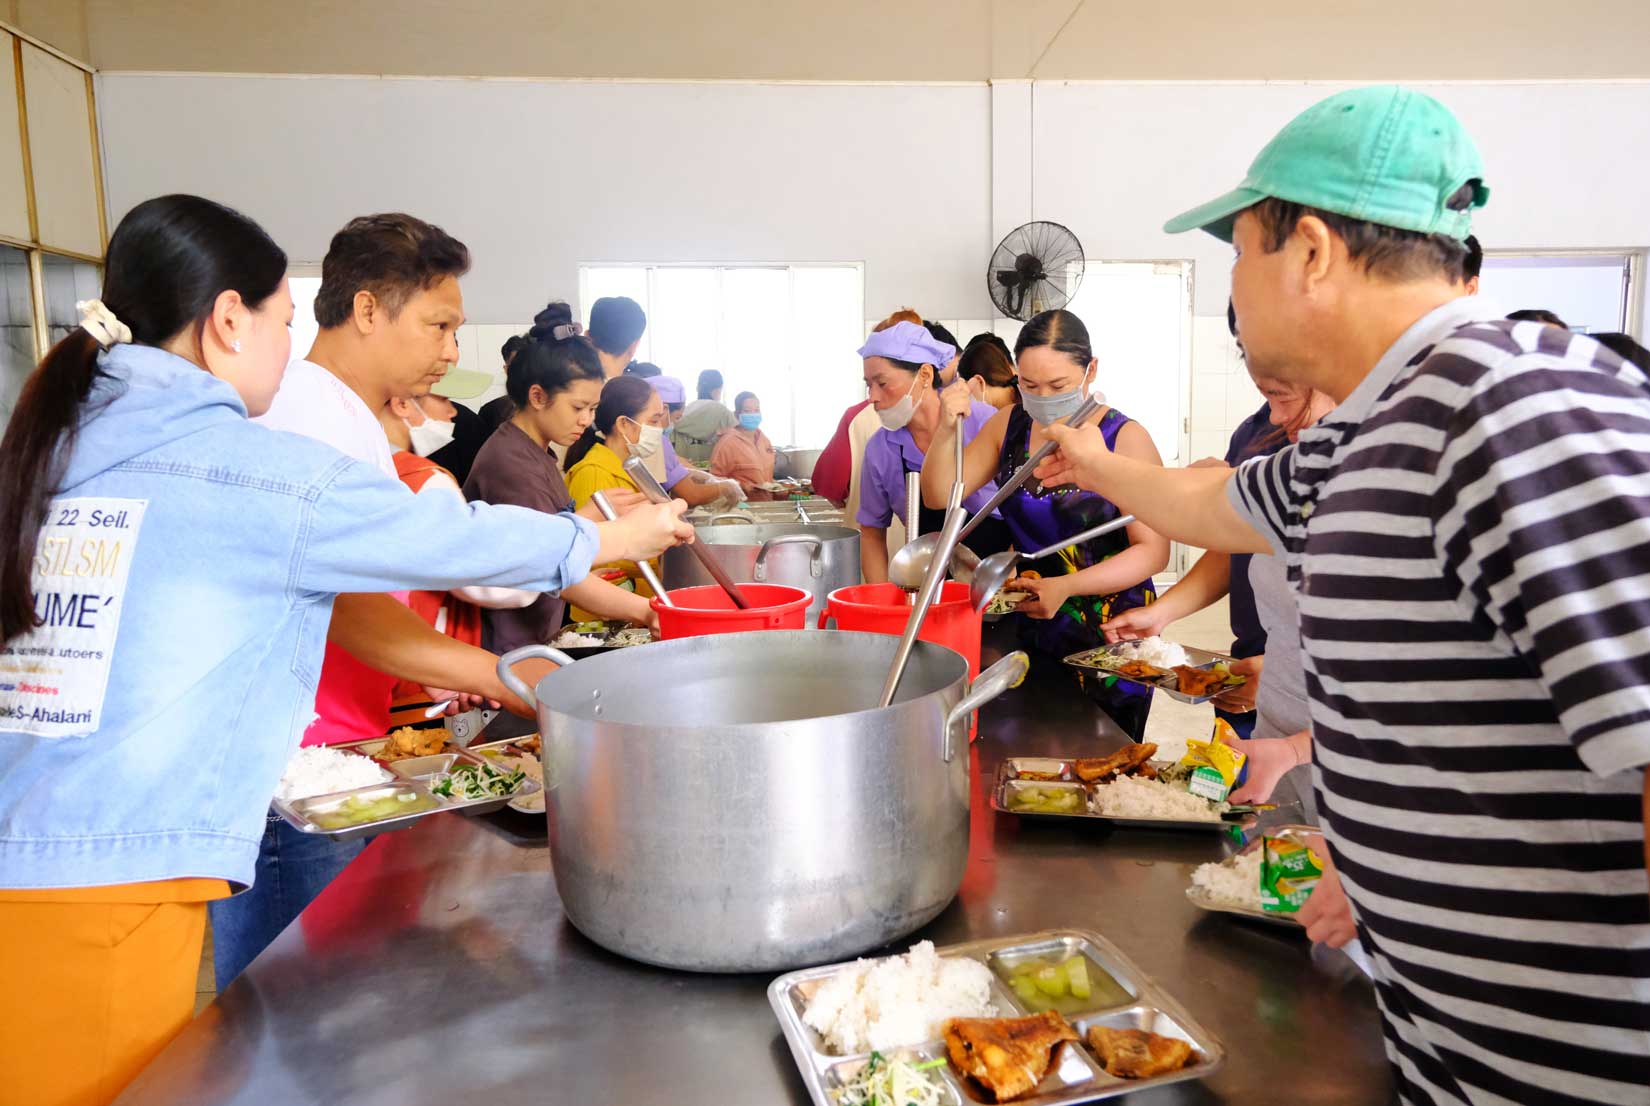 Bà Phạm Thanh Thảo – Ban Chấp hành CĐCS Công ty Cổ phần Nha Trang Seafoods - cho biết, trong mỗi bữa ăn đều có khoảng 5 - 6 món cho công nhân tự do lựa chọn. Trong đó, thực đơn được thay đổi hàng ngày, buổi sáng và chiều khác nhau để công nhân ăn không bị ngán.